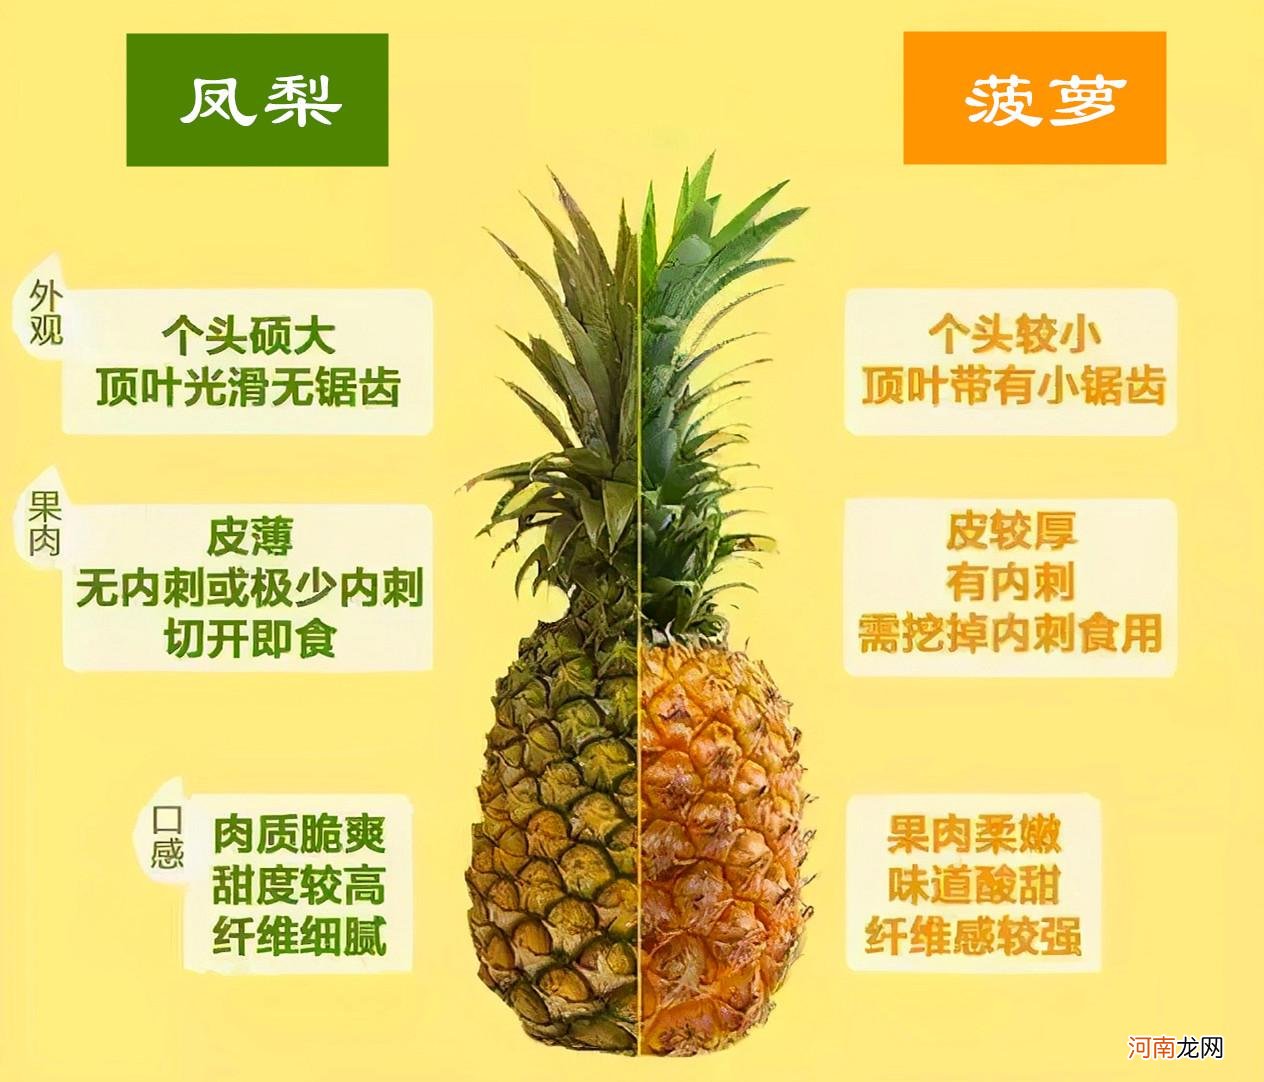 菠萝和凤梨是同一种水果吗 菠萝和凤梨有什么区别